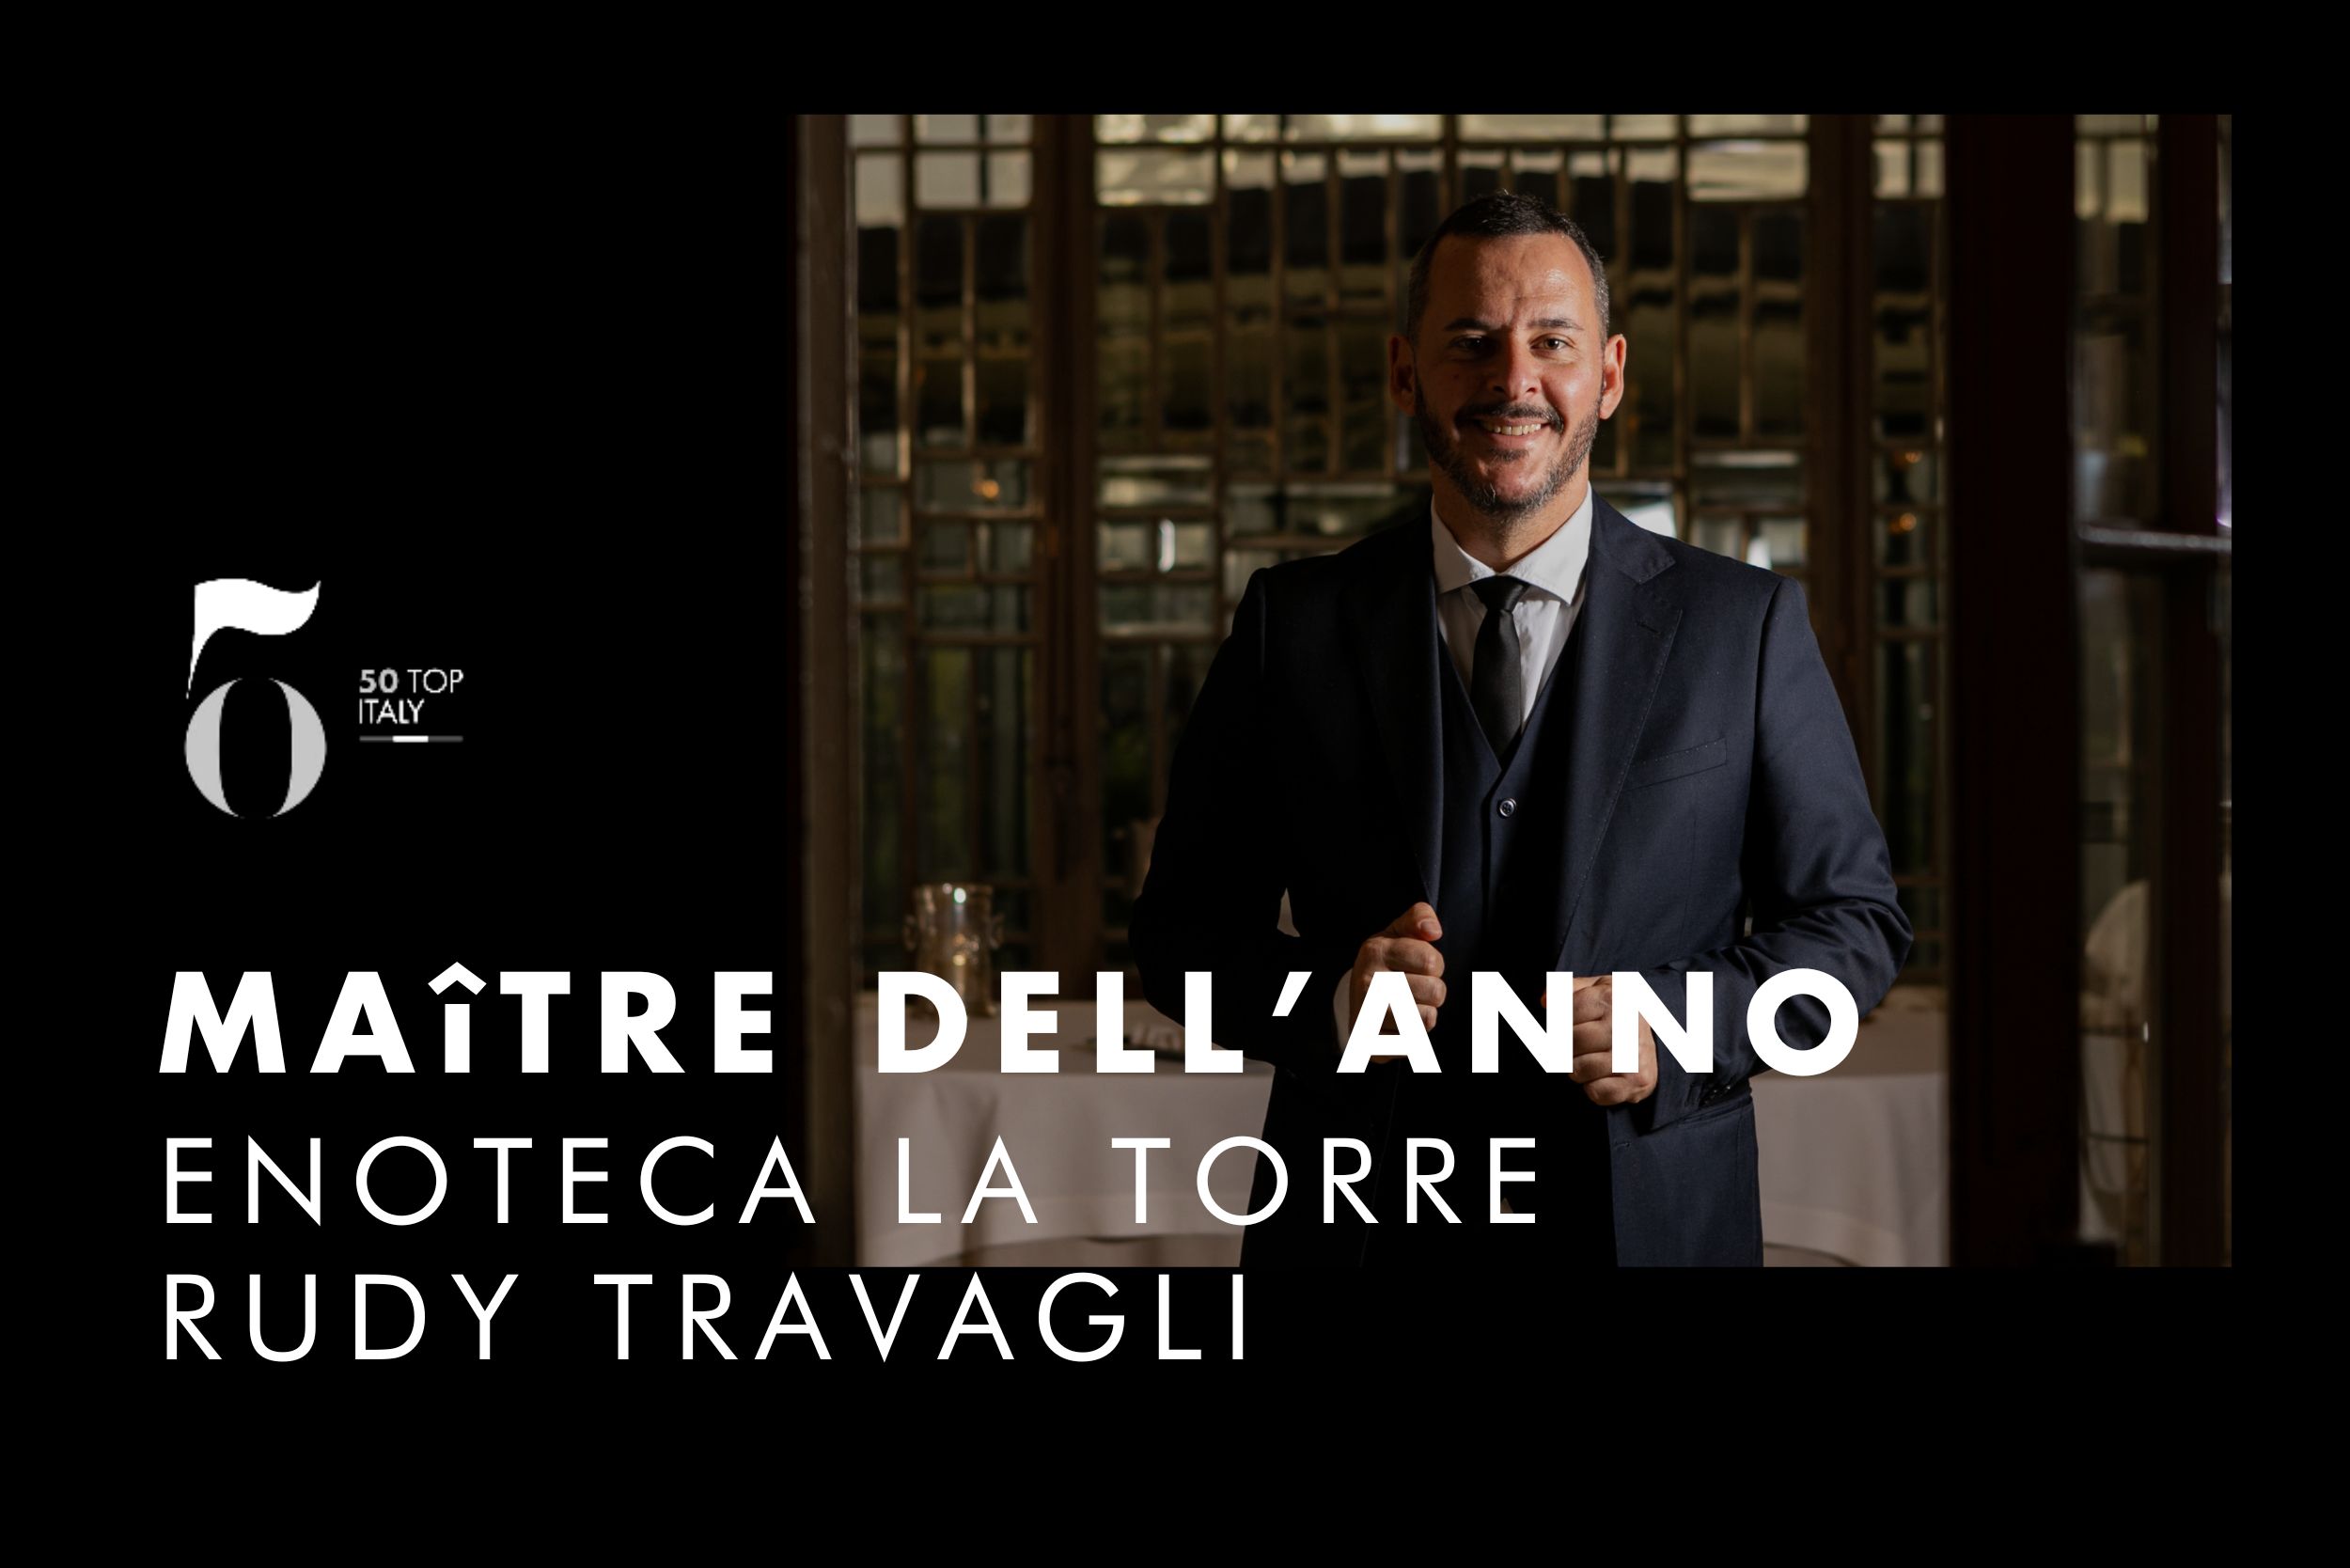 Rudy Travagli è Maître dell’Anno per 50 Top Italy